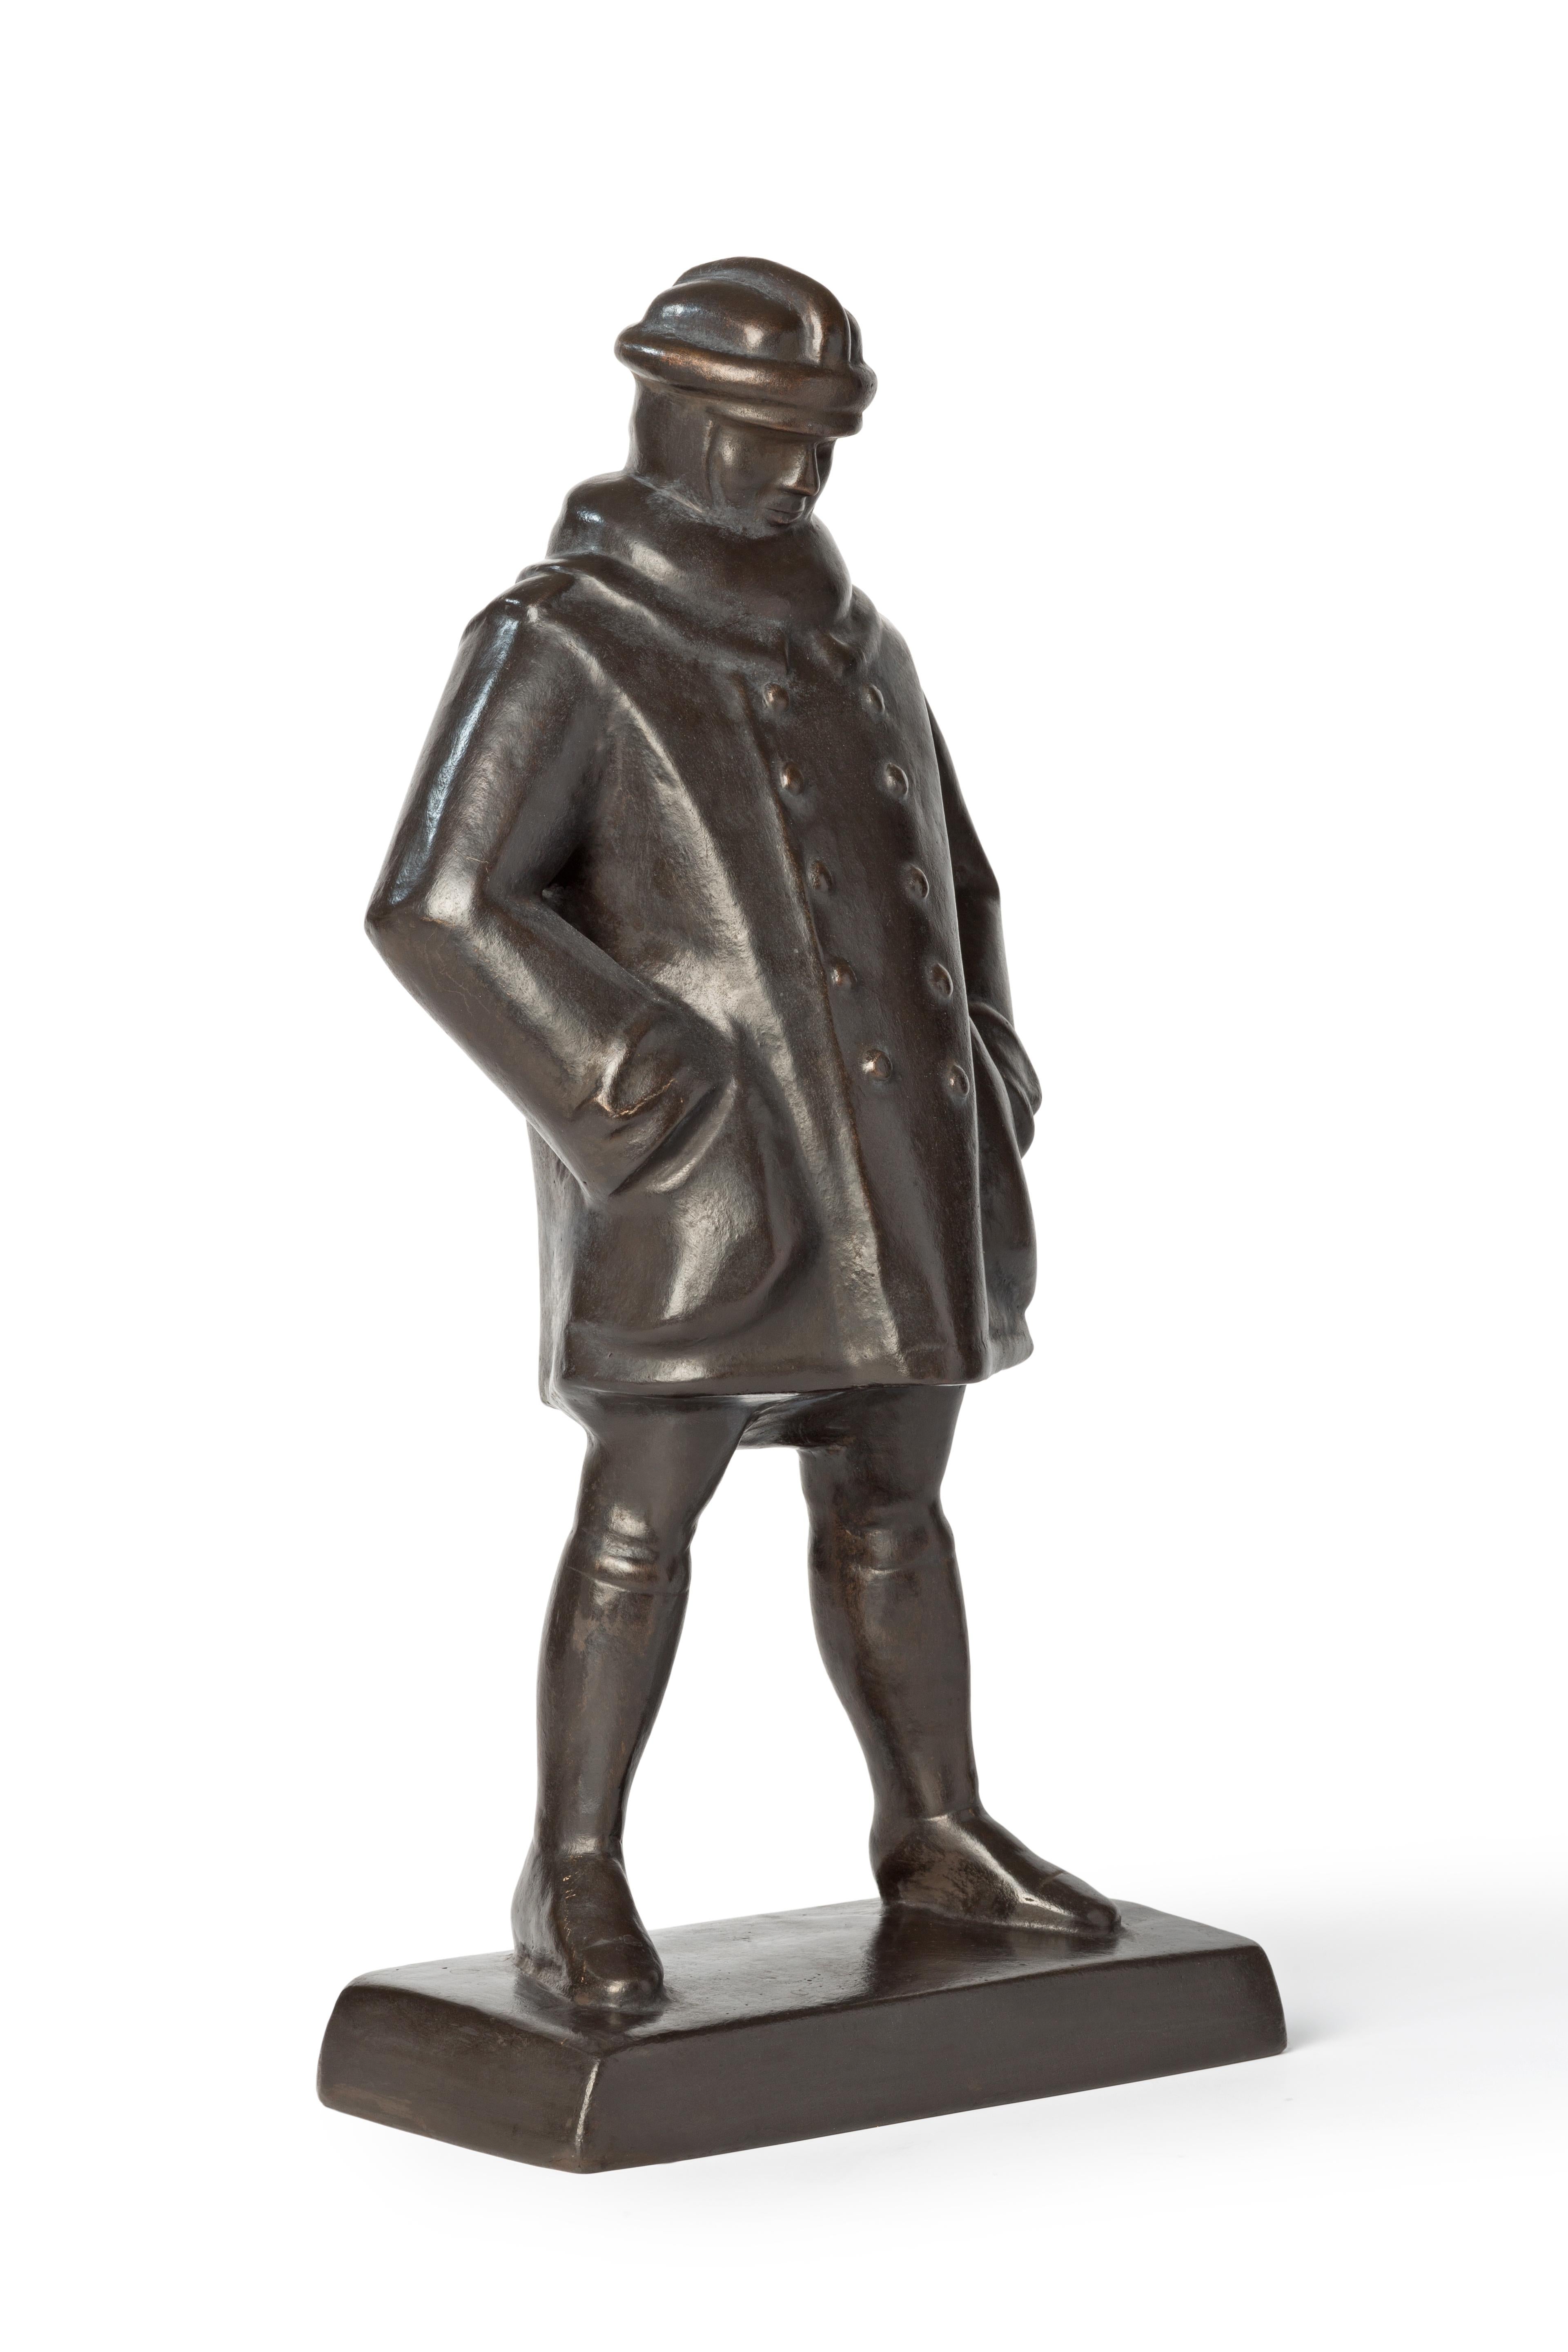 Rudolf Glockenbronze-Statuette des Aviatoren, 1917 – Sculpture von Rudolf Belling